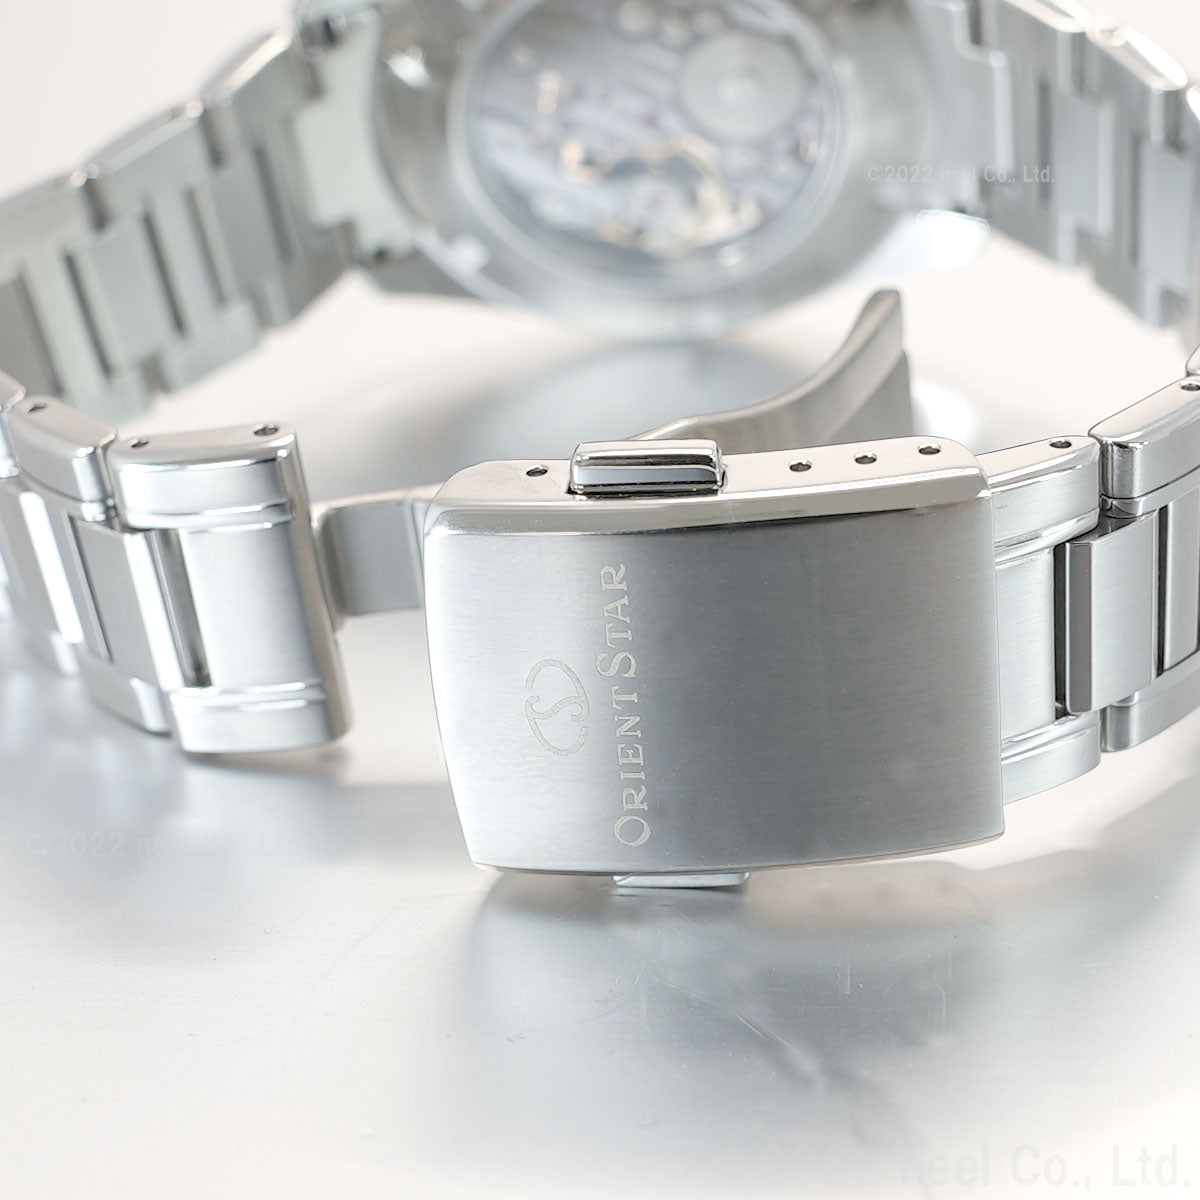 オリエントスター ORIENT STAR コンテンポラリー スケルトン RK-AZ0102N 腕時計 メンズ 手巻き 機械式